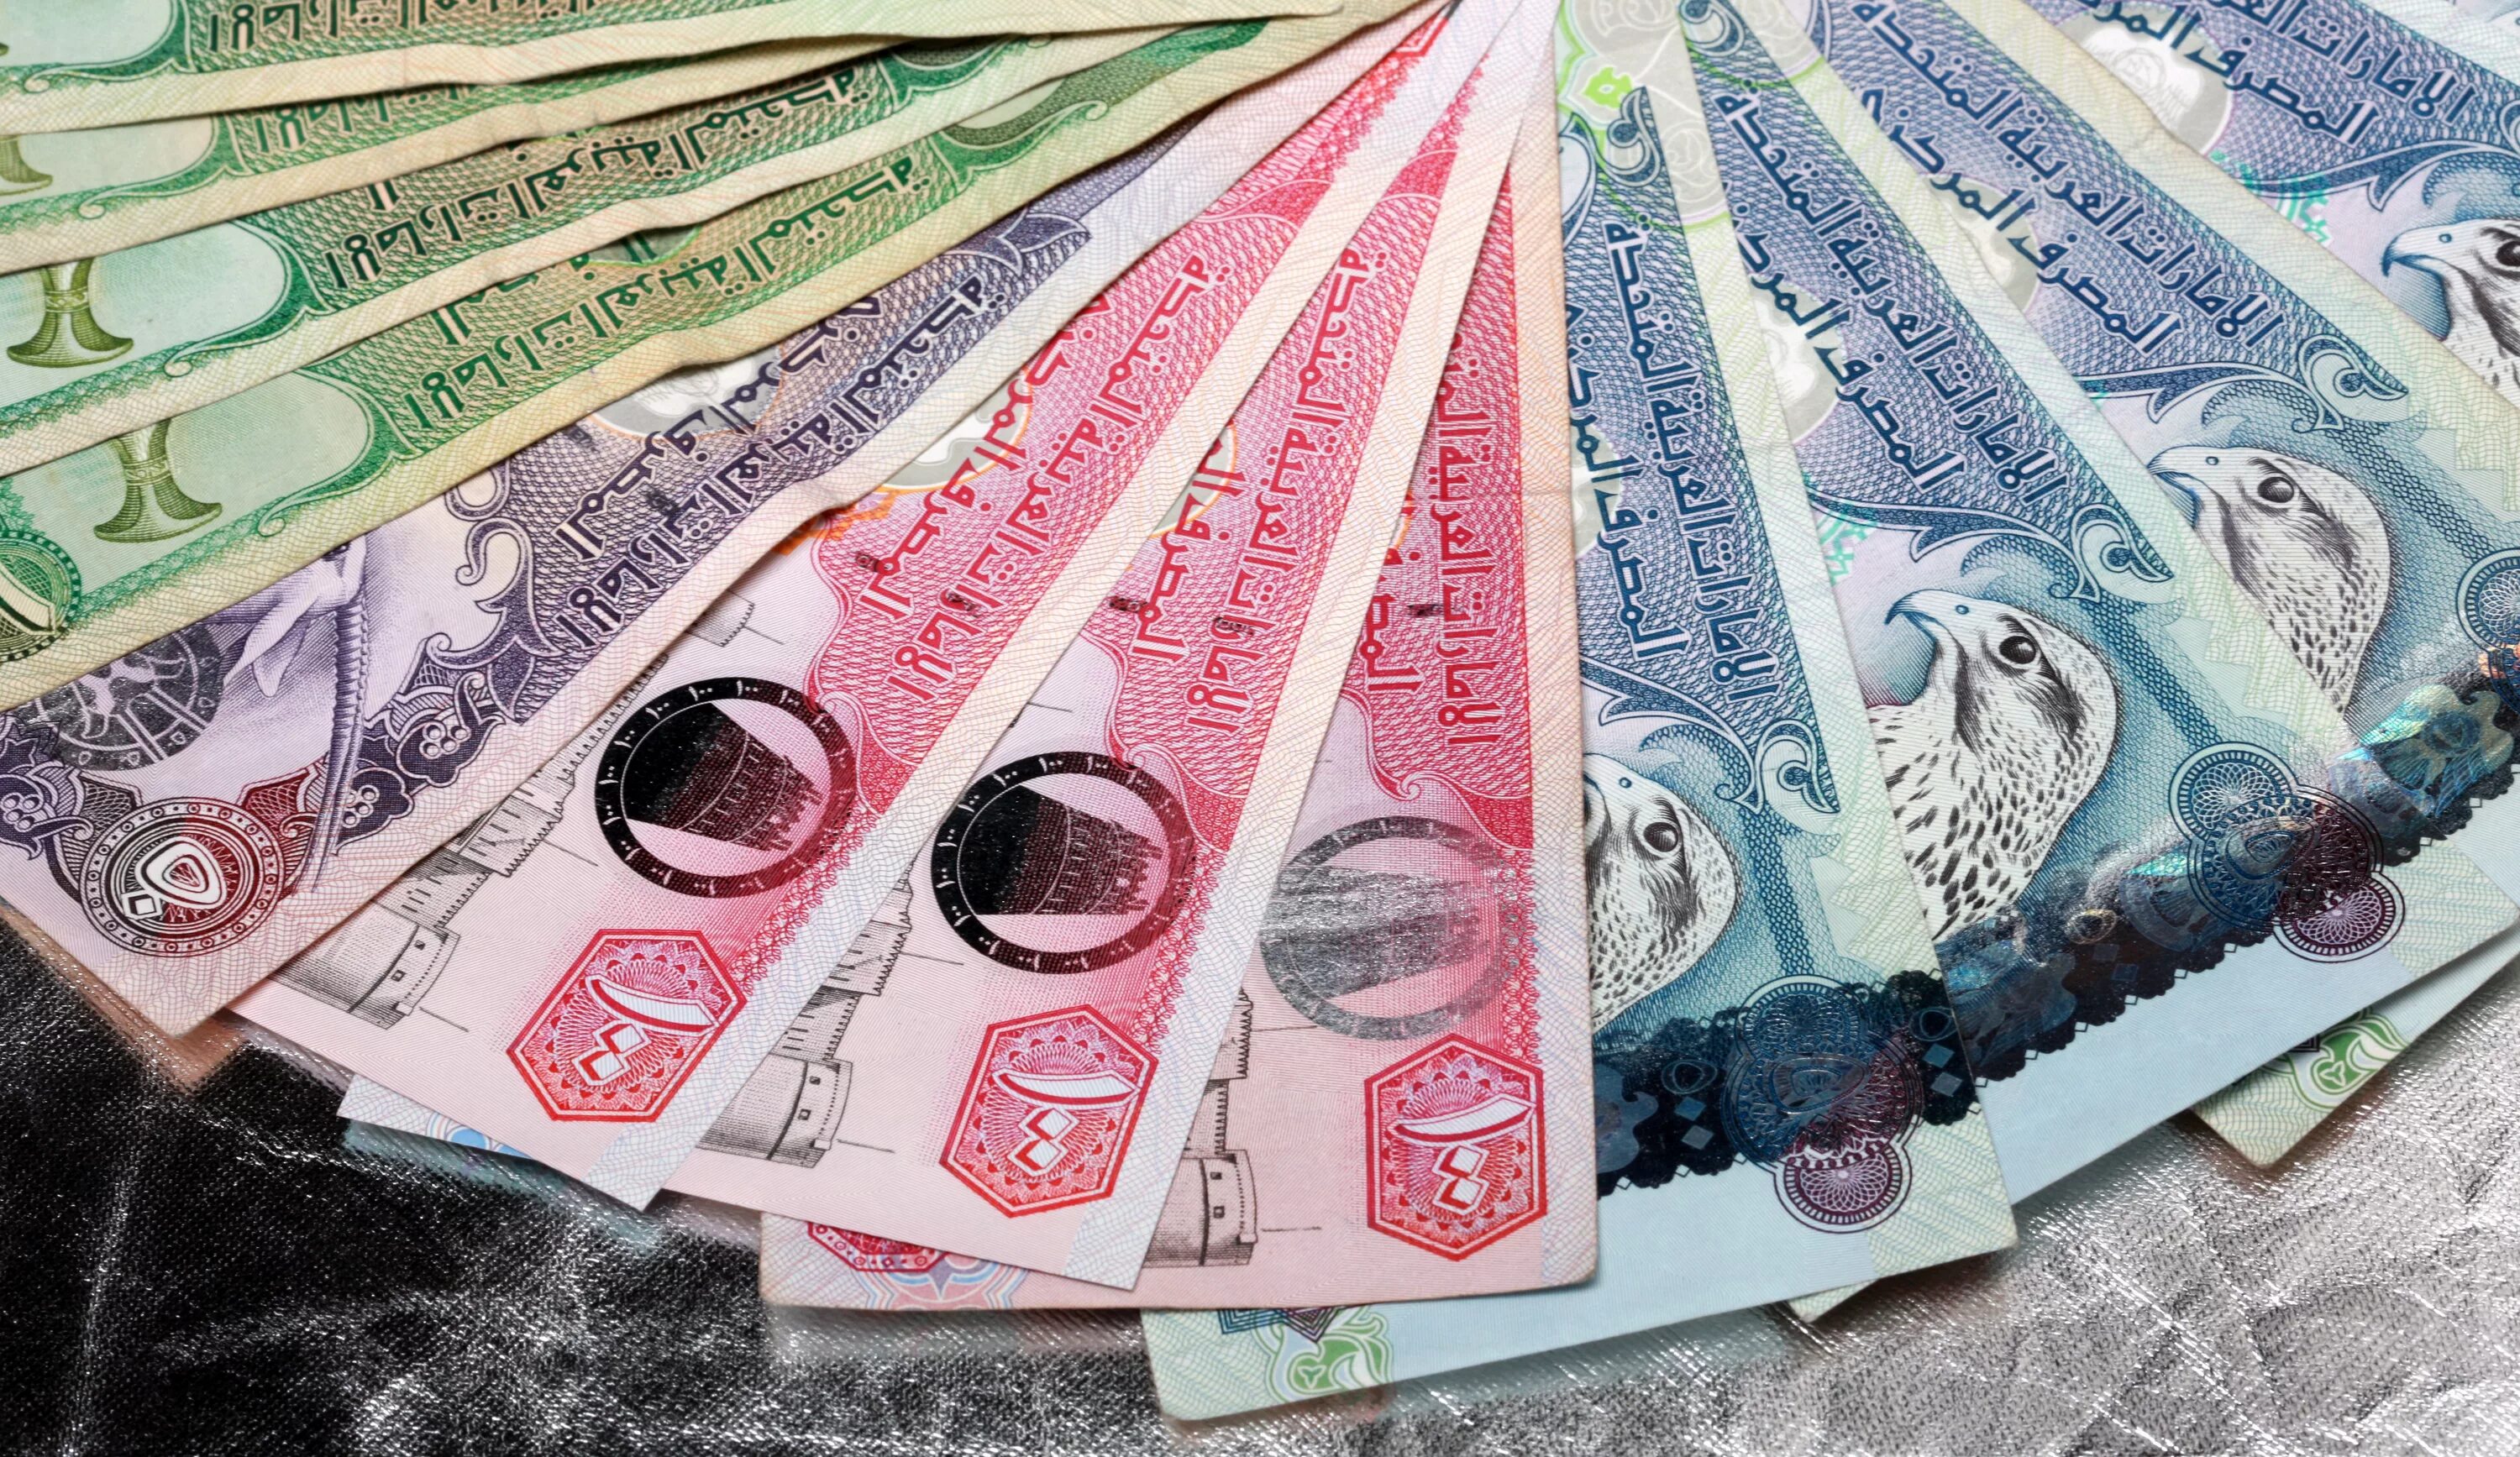 Менять доллары на дирхамы. Валюта Объединенных арабских Эмиратов. Купюры дирхамы ОАЭ. Национальная валюта ОАЭ. Дирхам — валюта Объединенных арабских Эмиратов.